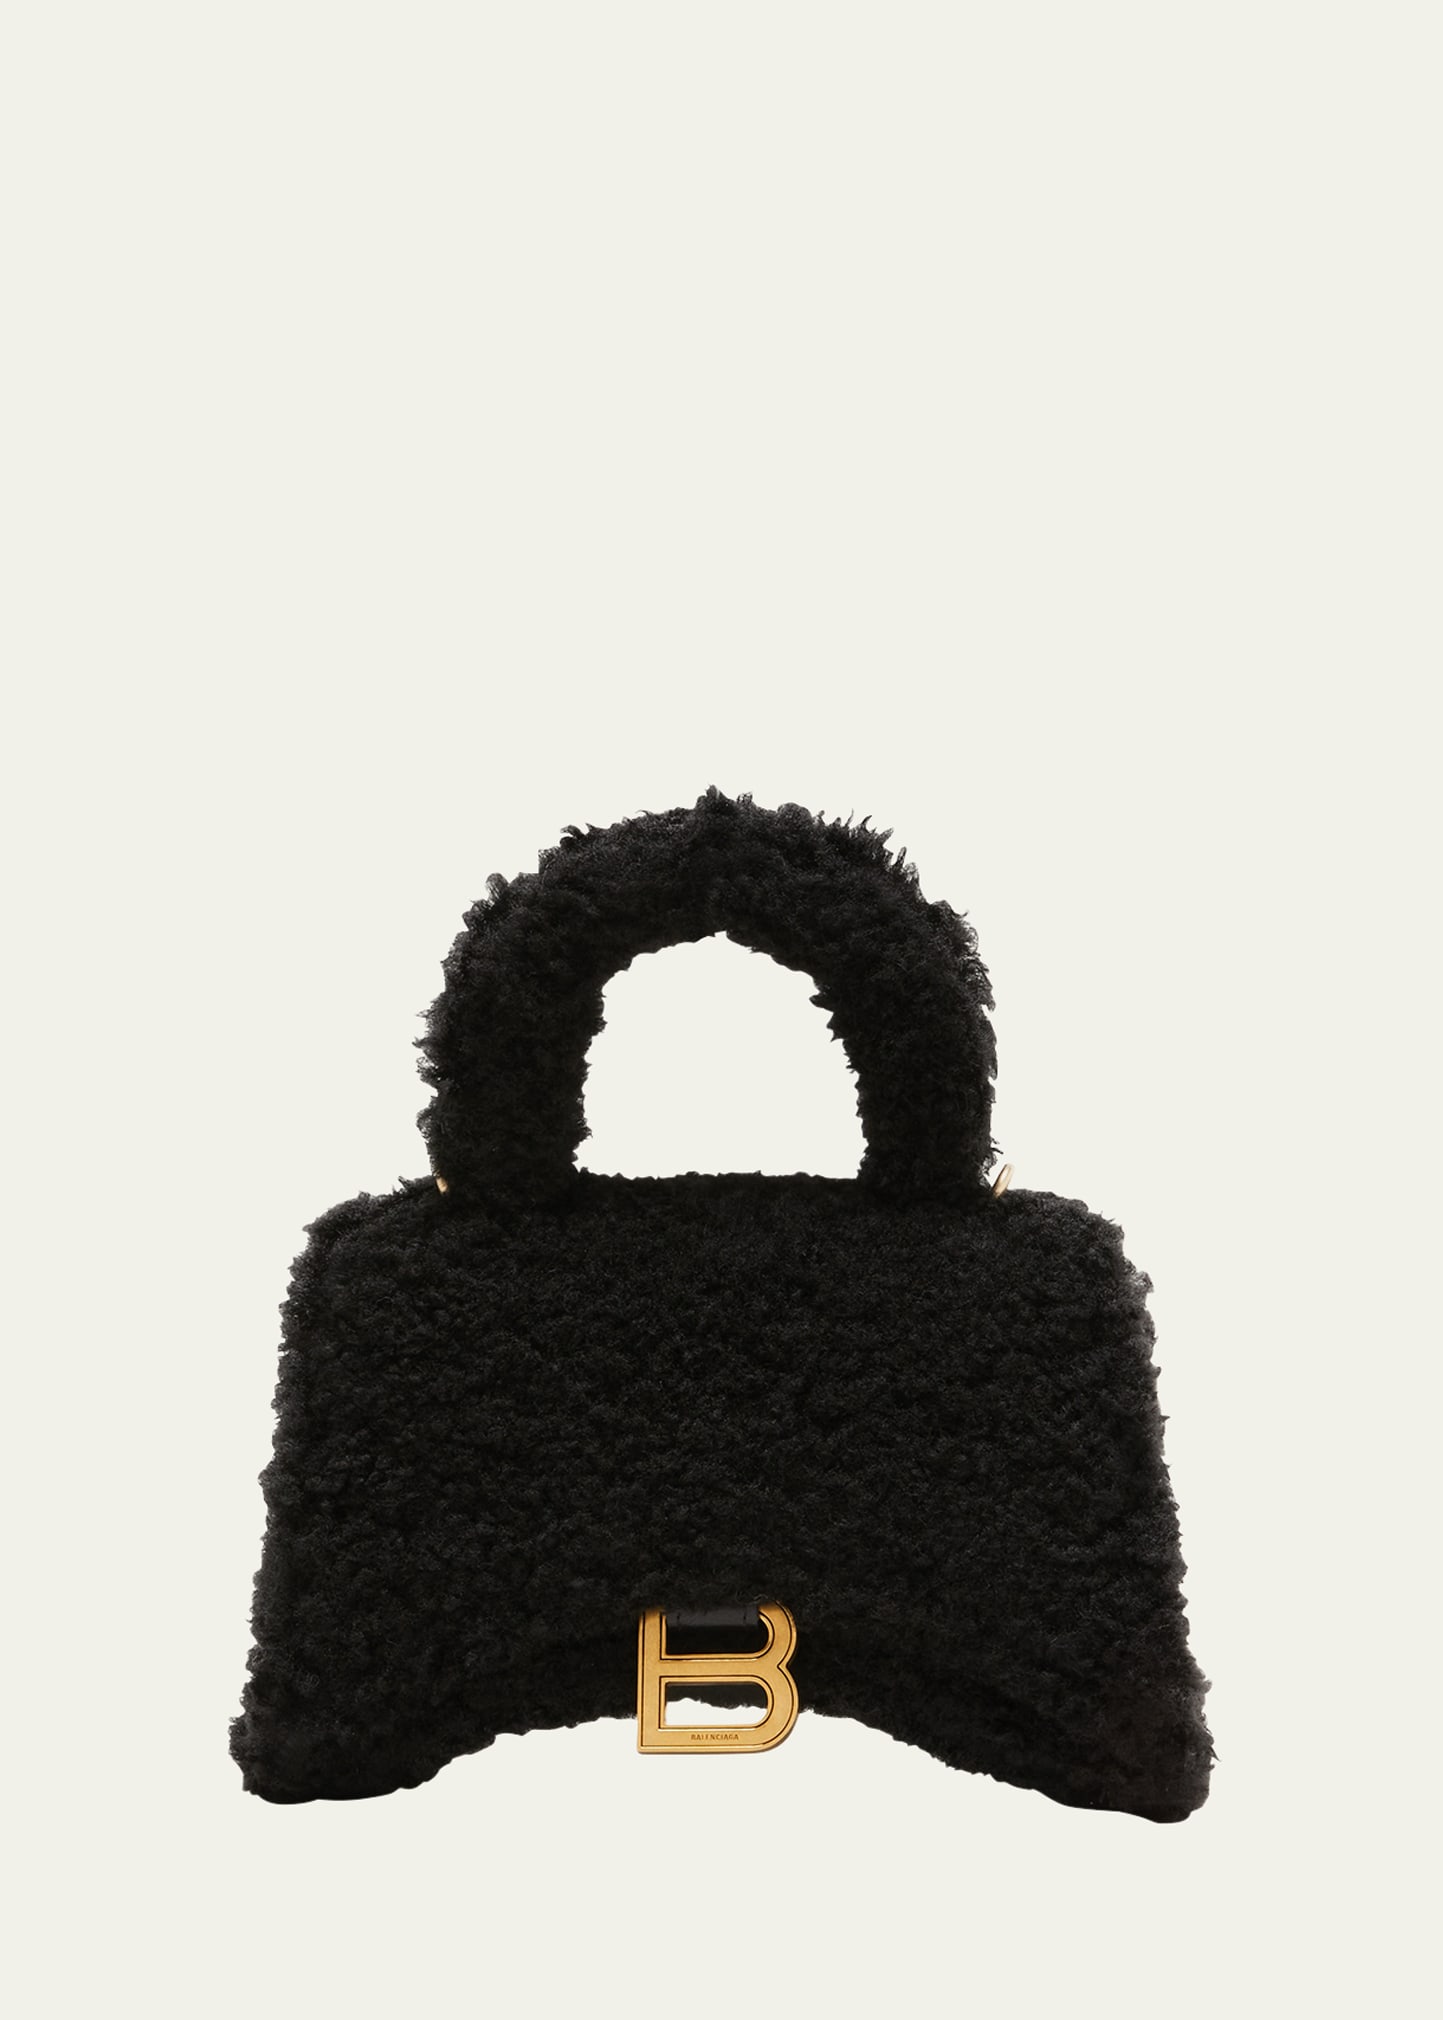 Balenciaga Hourglass XS Furry Shearling Top-Handle Bag | Bergdorf Goodman